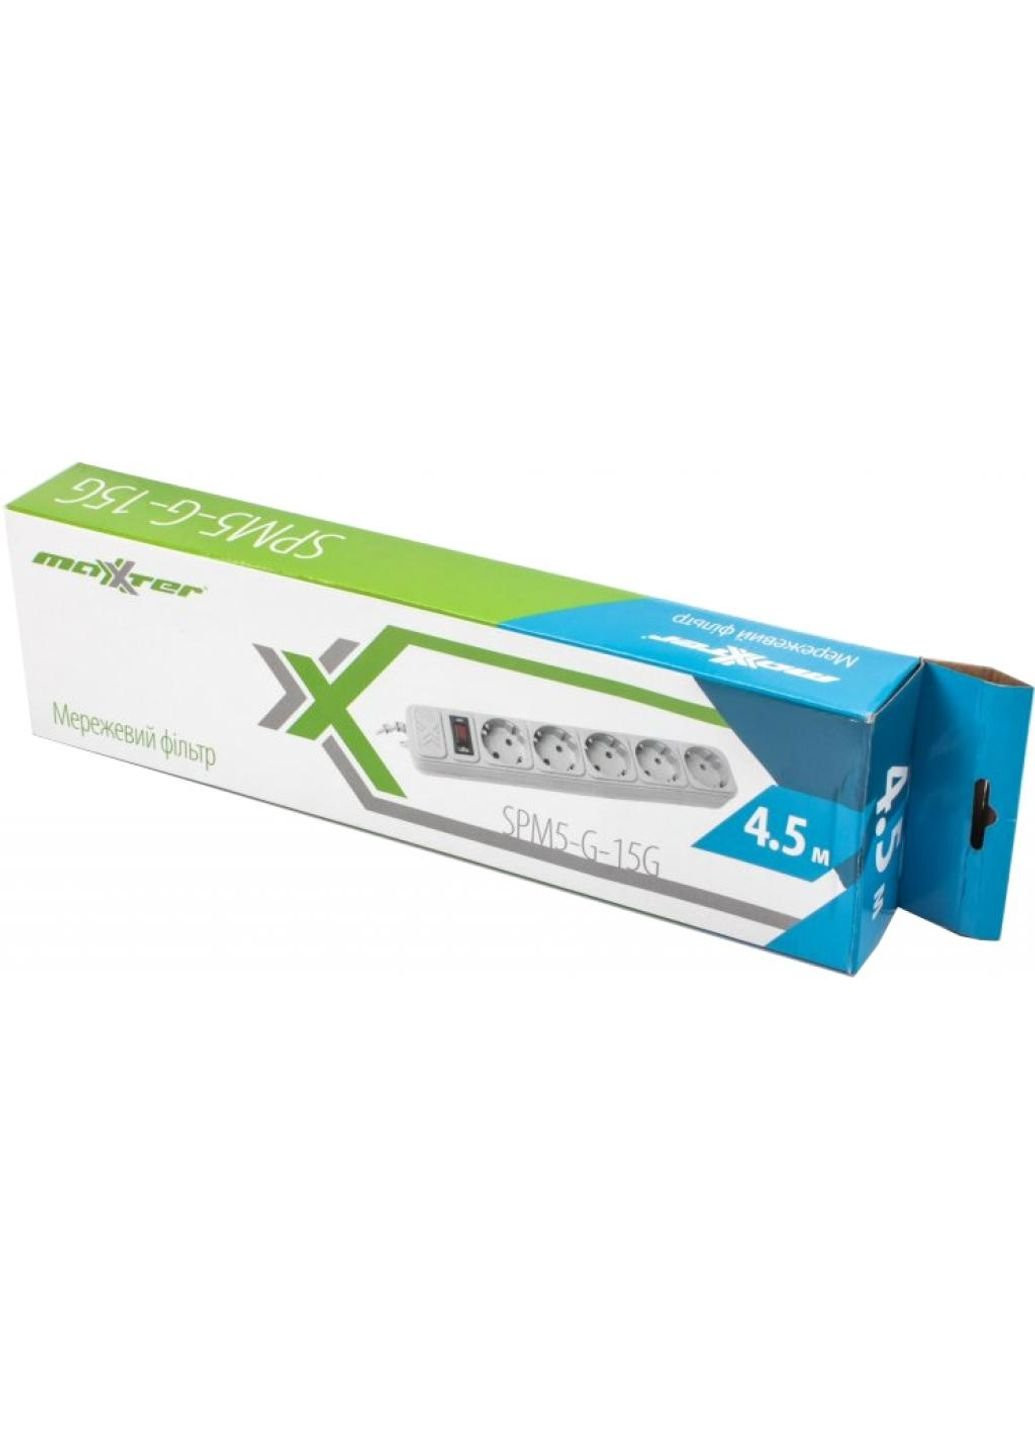 Сетевой фильтр питания SPM5-G-15G grey, 4.5 м кабель, 5 розеток (SPM5-G-15G) Maxxter (251409832)